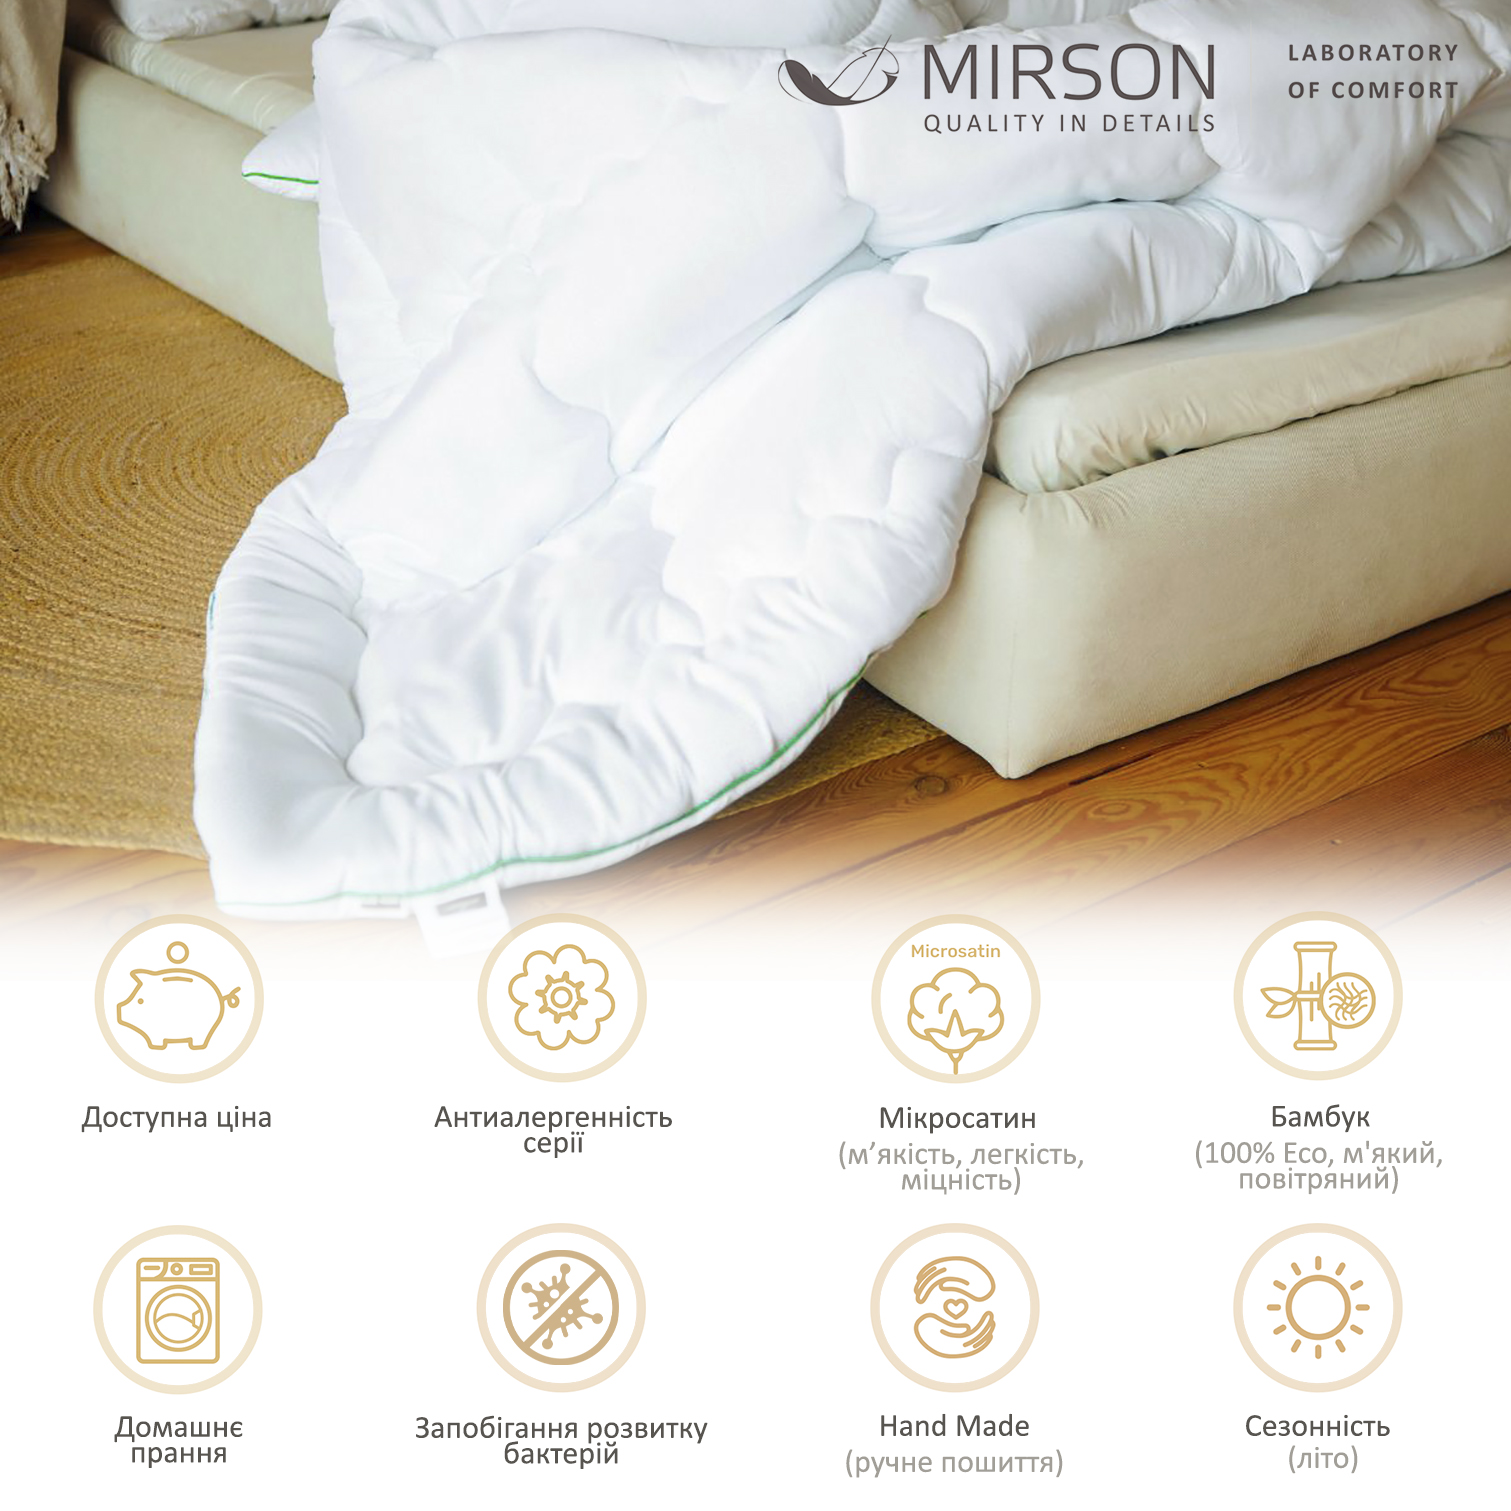 Ковдра бамбукова MirSon Eco Mikrosatin Hand Made №0441, літня, 200x220 см, біла - фото 6